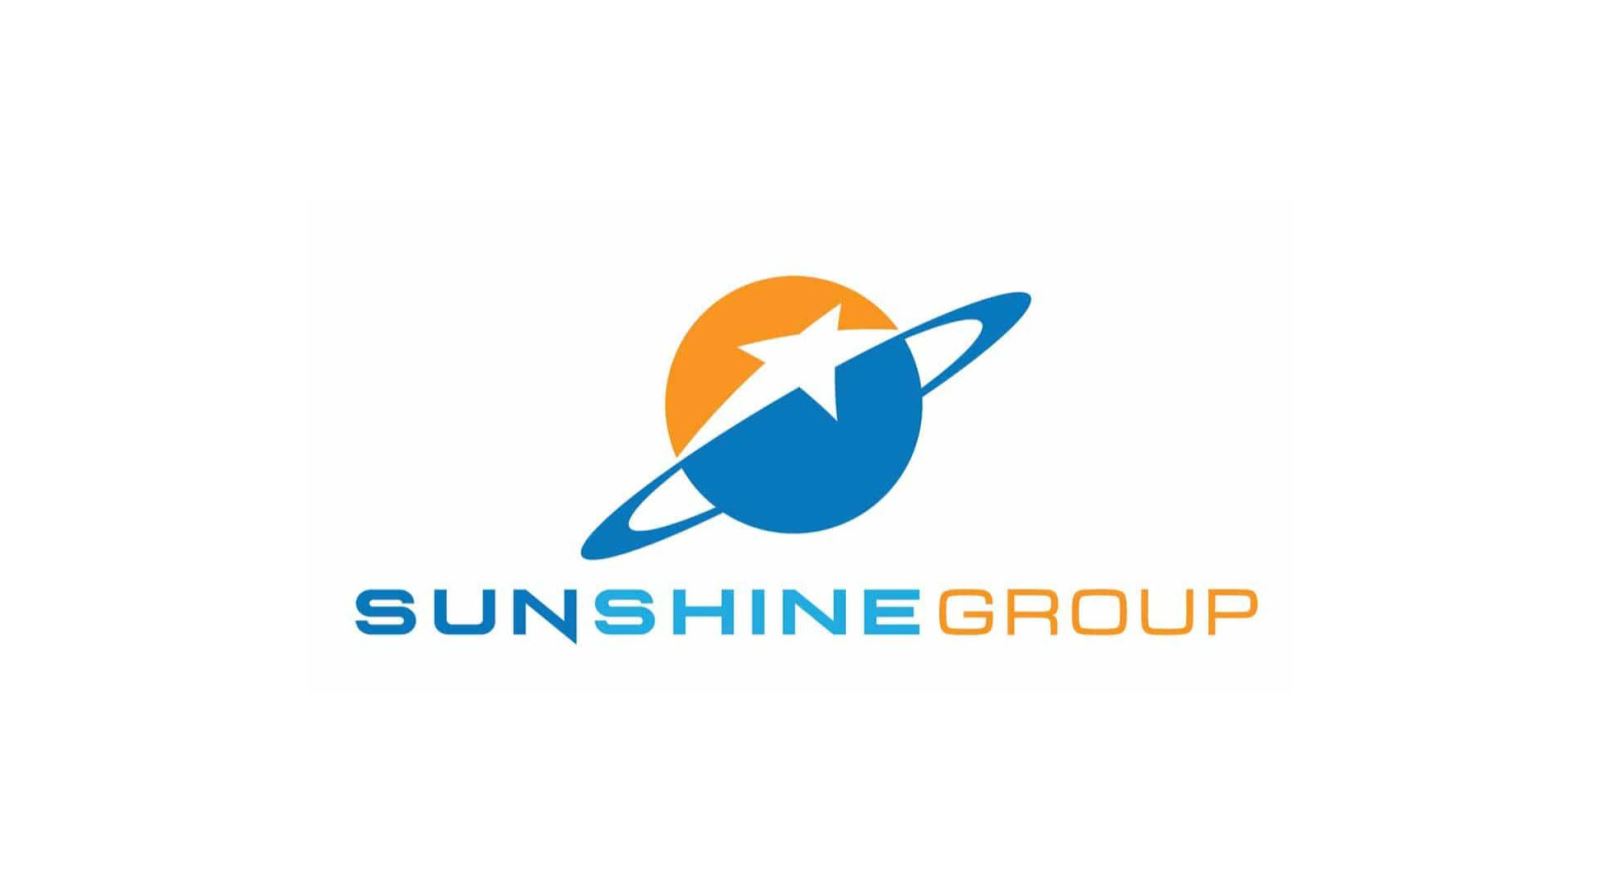 Sunshine Group developer of Sunshine Crystal River project